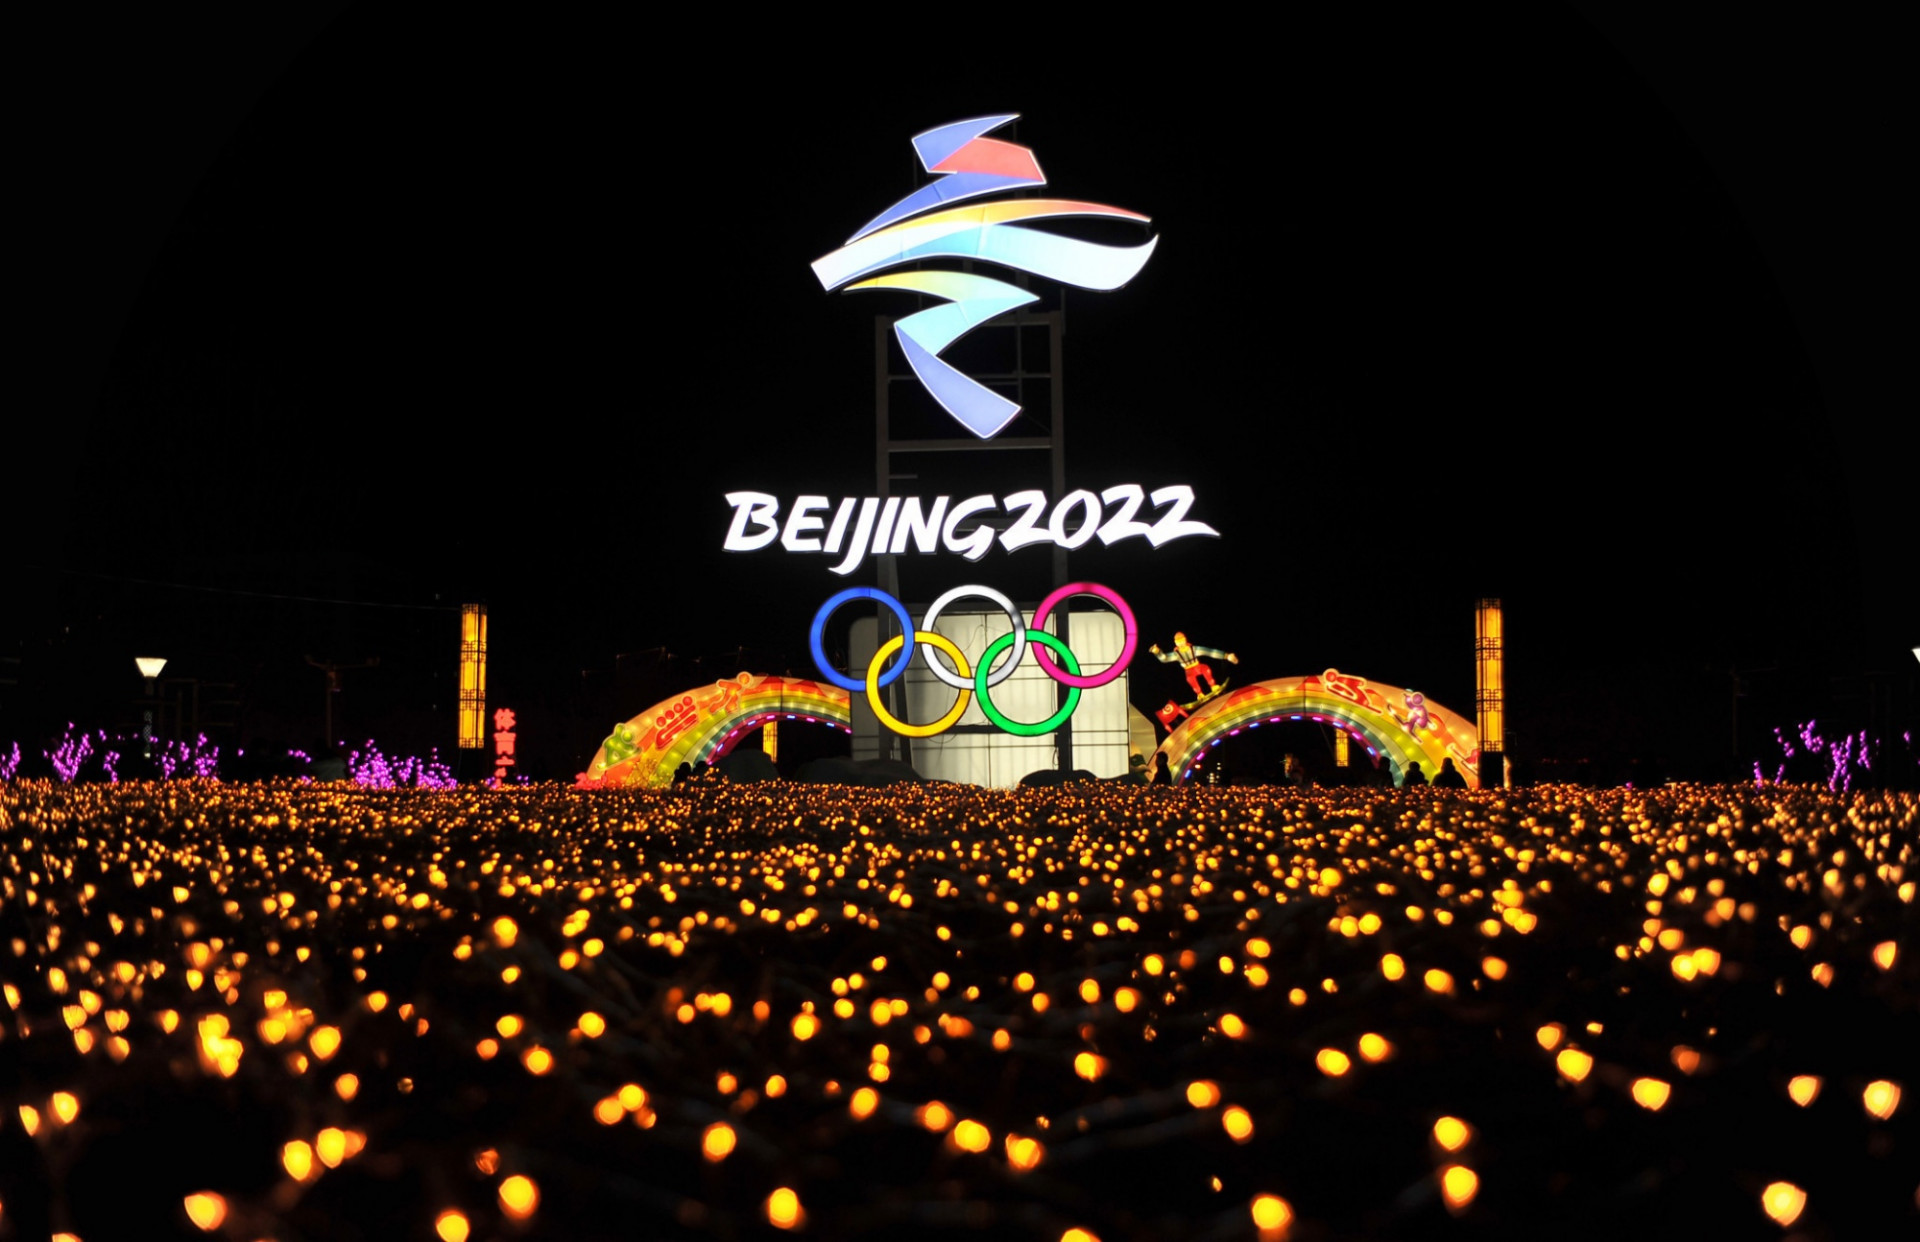 Бейжің-2022: Олимпиада алауын жағу рәсімі көрерменсіз өтеді